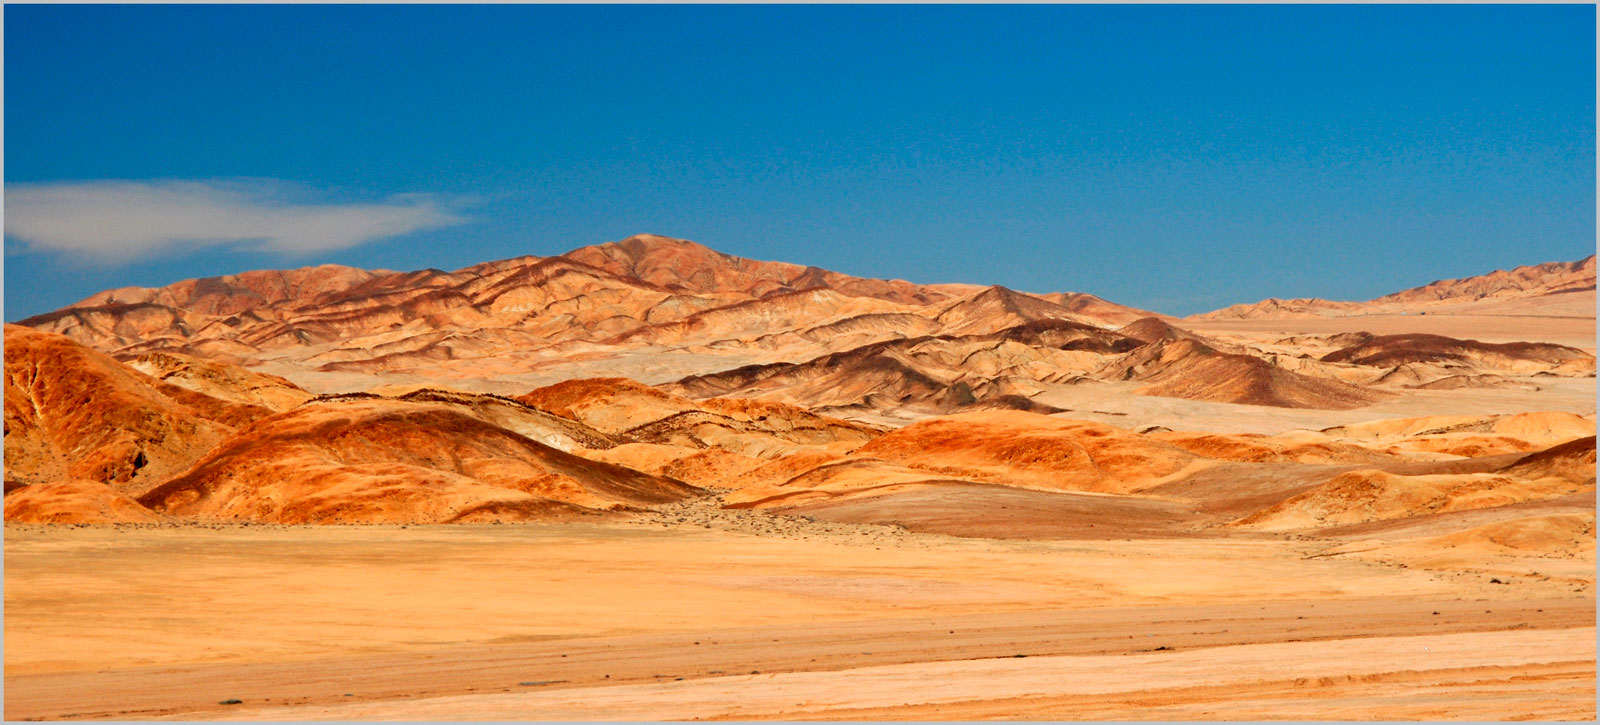 Atacama-Wüste - Chile